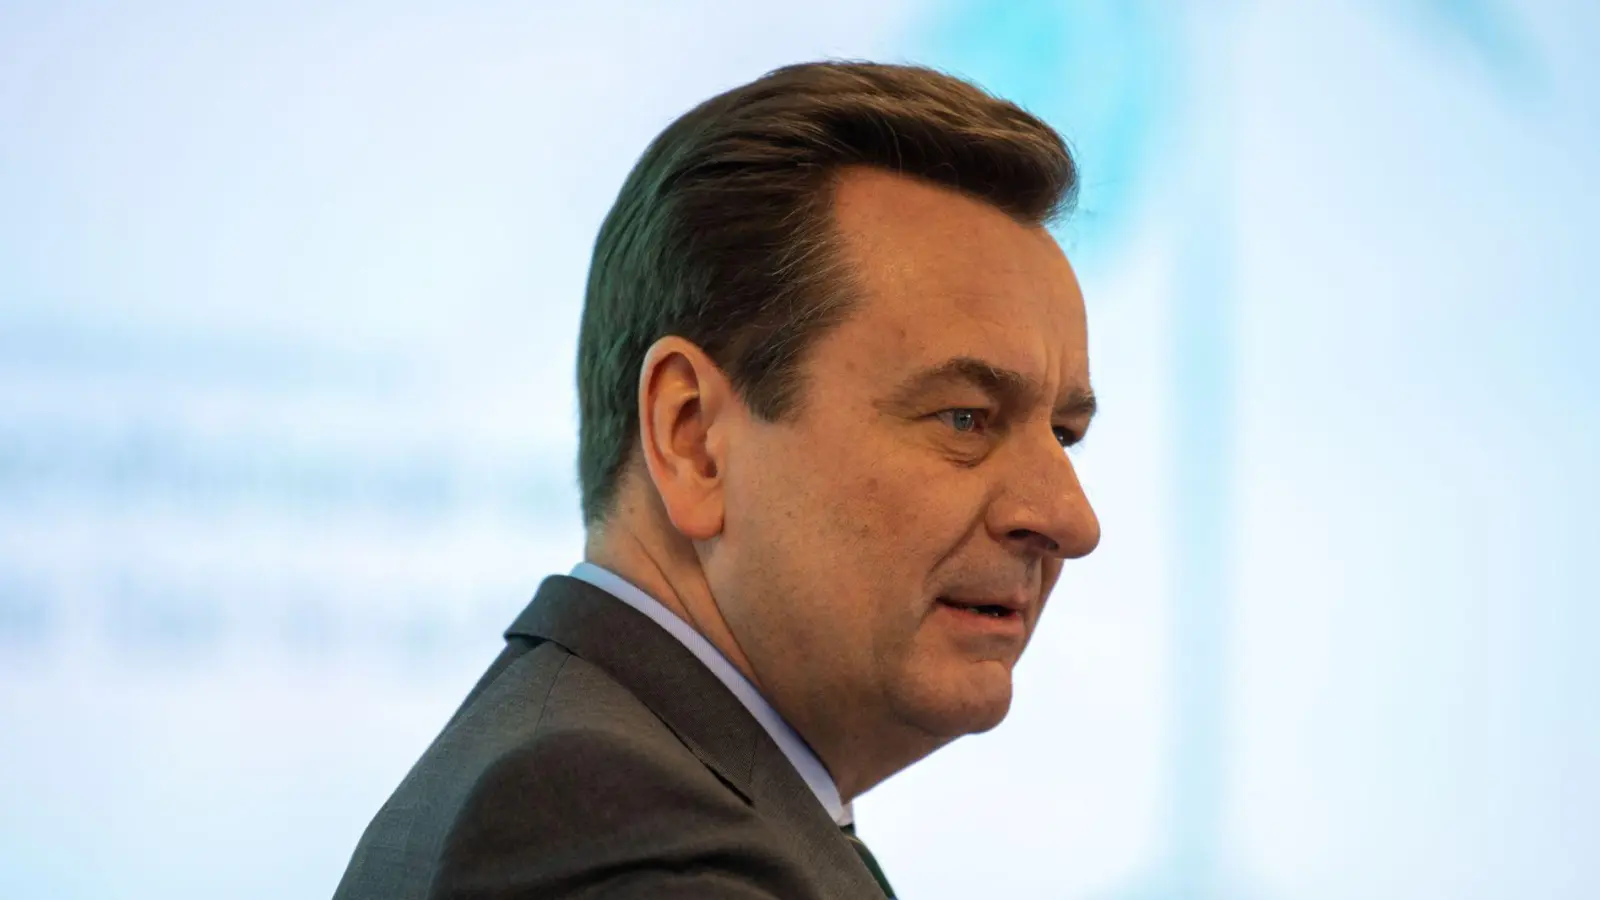 Munich Re Vorstandschef Joachim Wenning. Der Dax-Konzern Munich Re gibt seine übliche politische Zurückhaltung auf und fordert durchgreifende wirtschaftliche Reformen. (Foto: Lino Mirgeler/dpa)